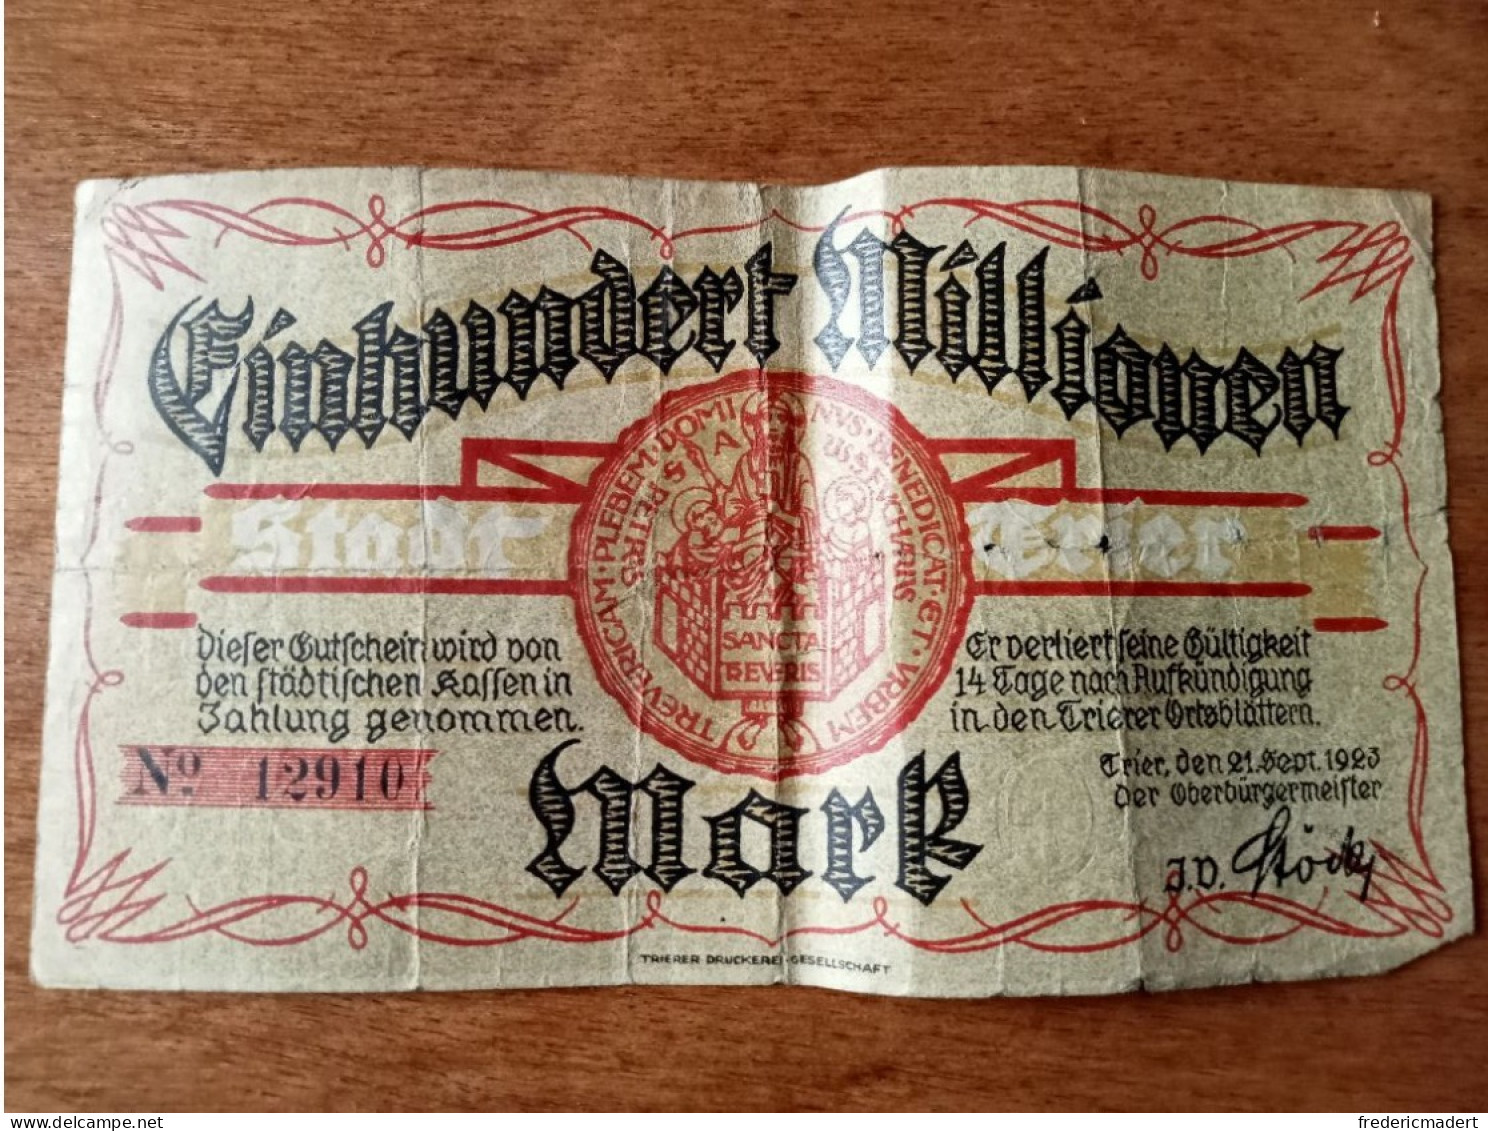 Billet De Cent Millions De Mark 1923 - Collezioni